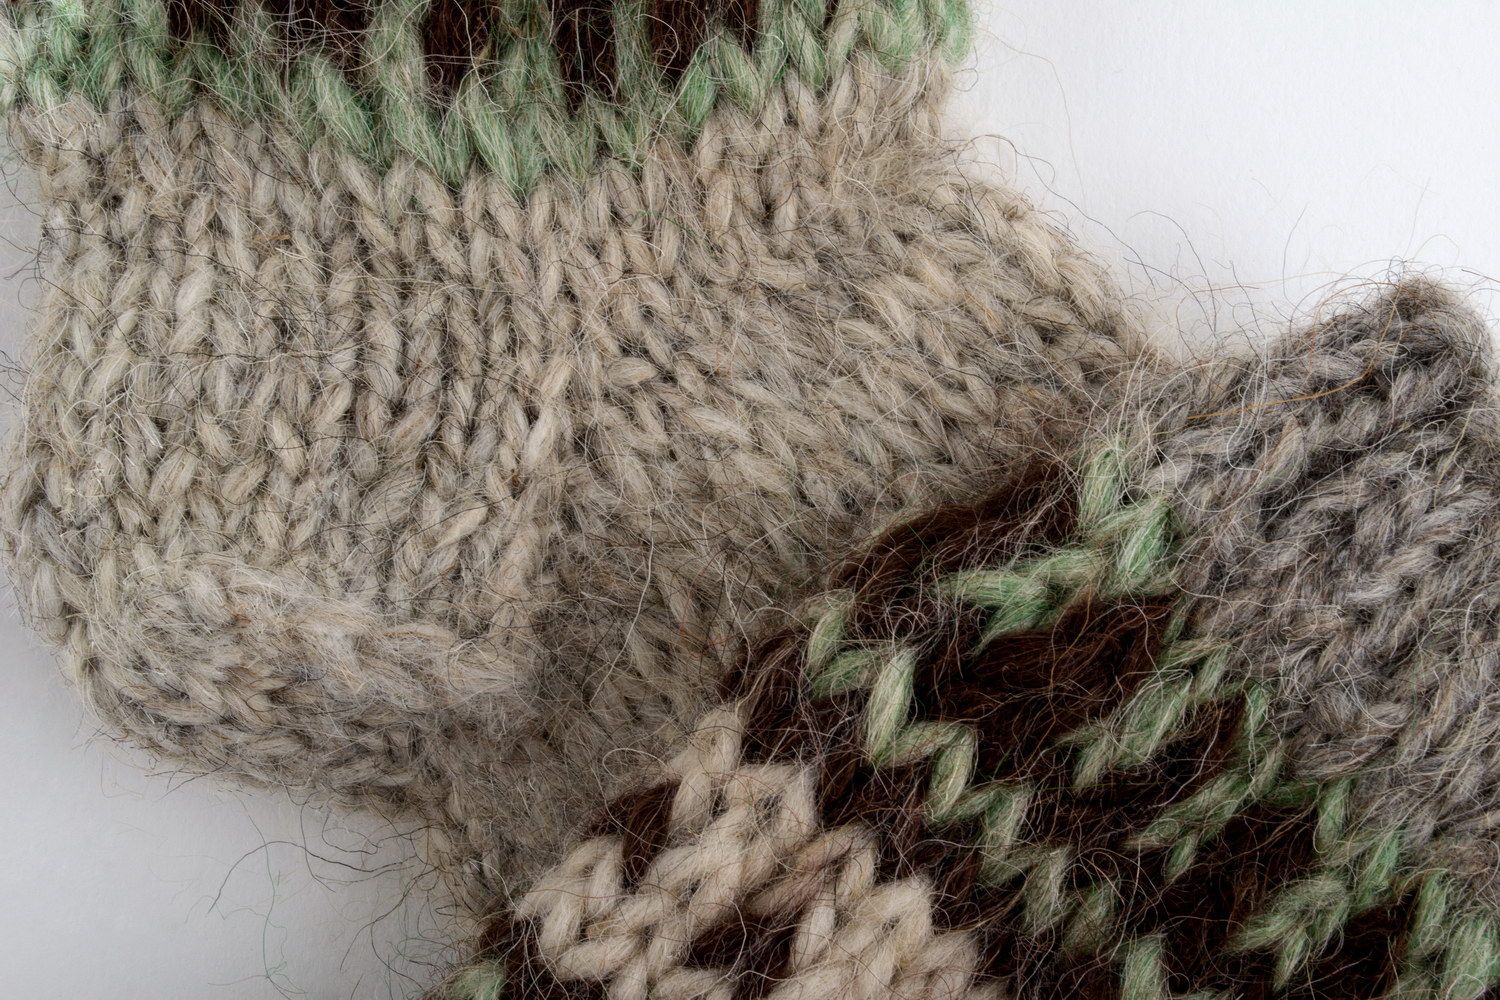 Calzini di lana per uomo fatti a mano abbigliamento da uomo calzini caldi
 foto 1